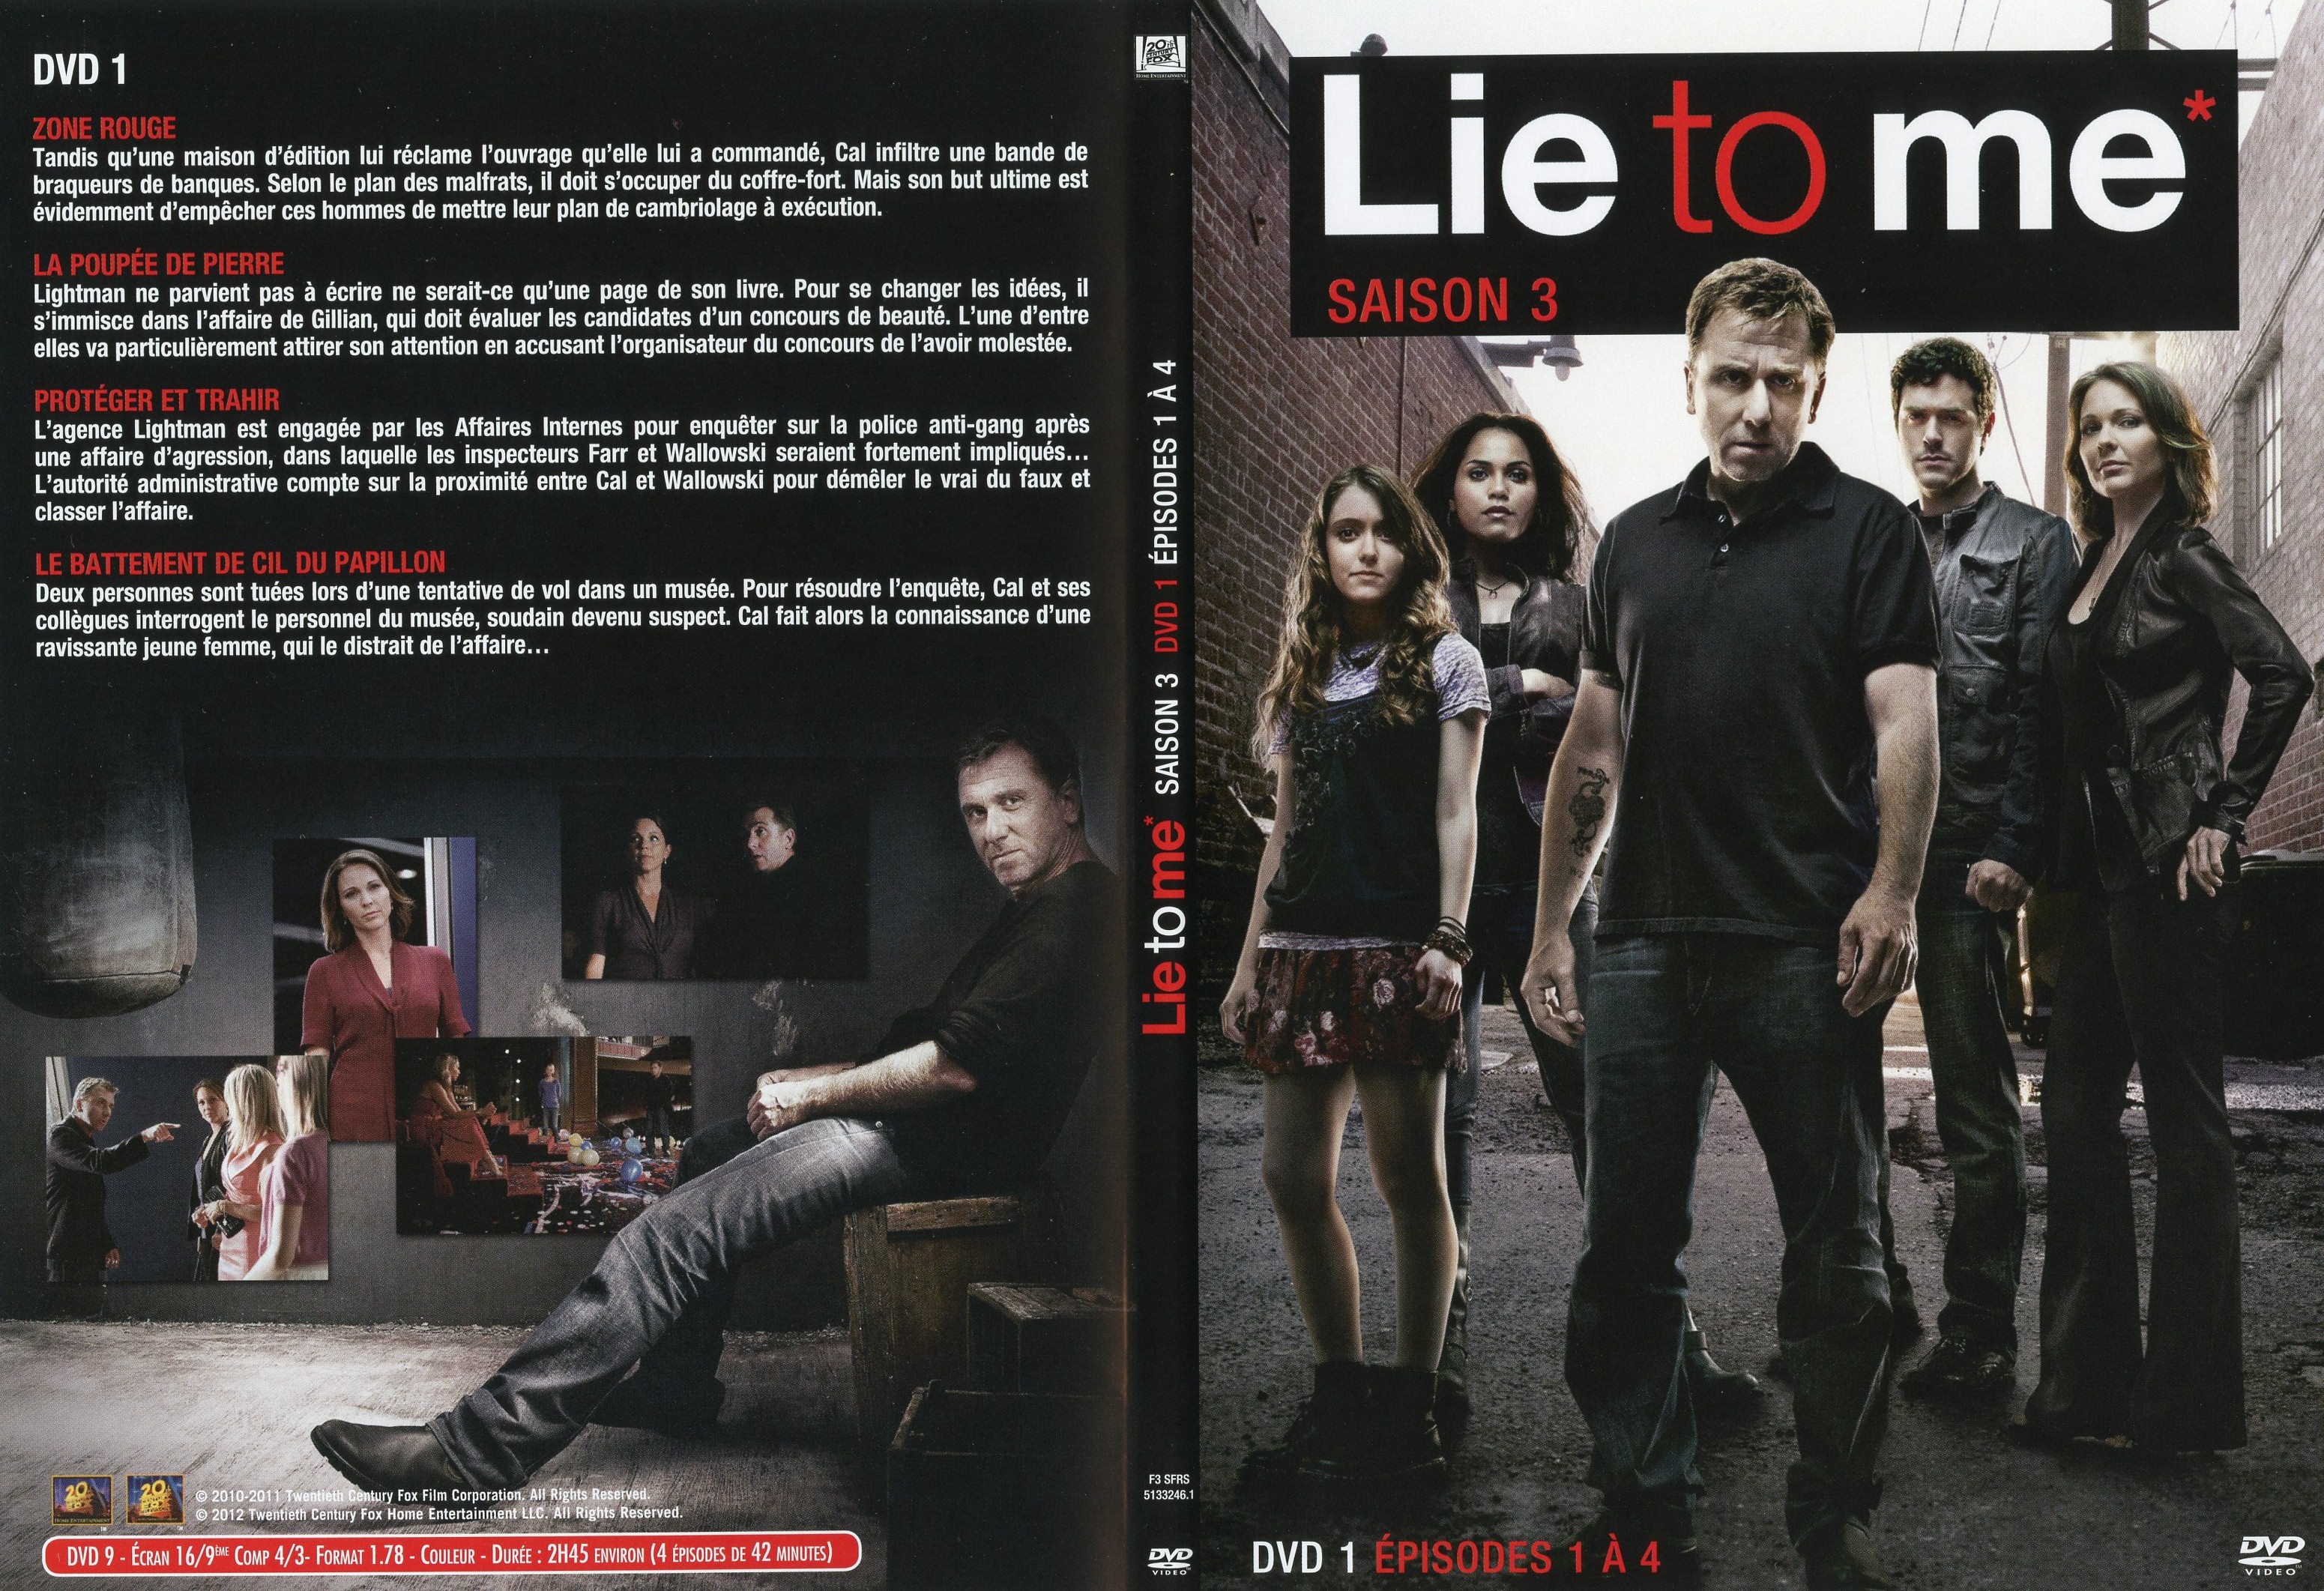 Jaquette DVD Lie to me Saison 3 DVD 1